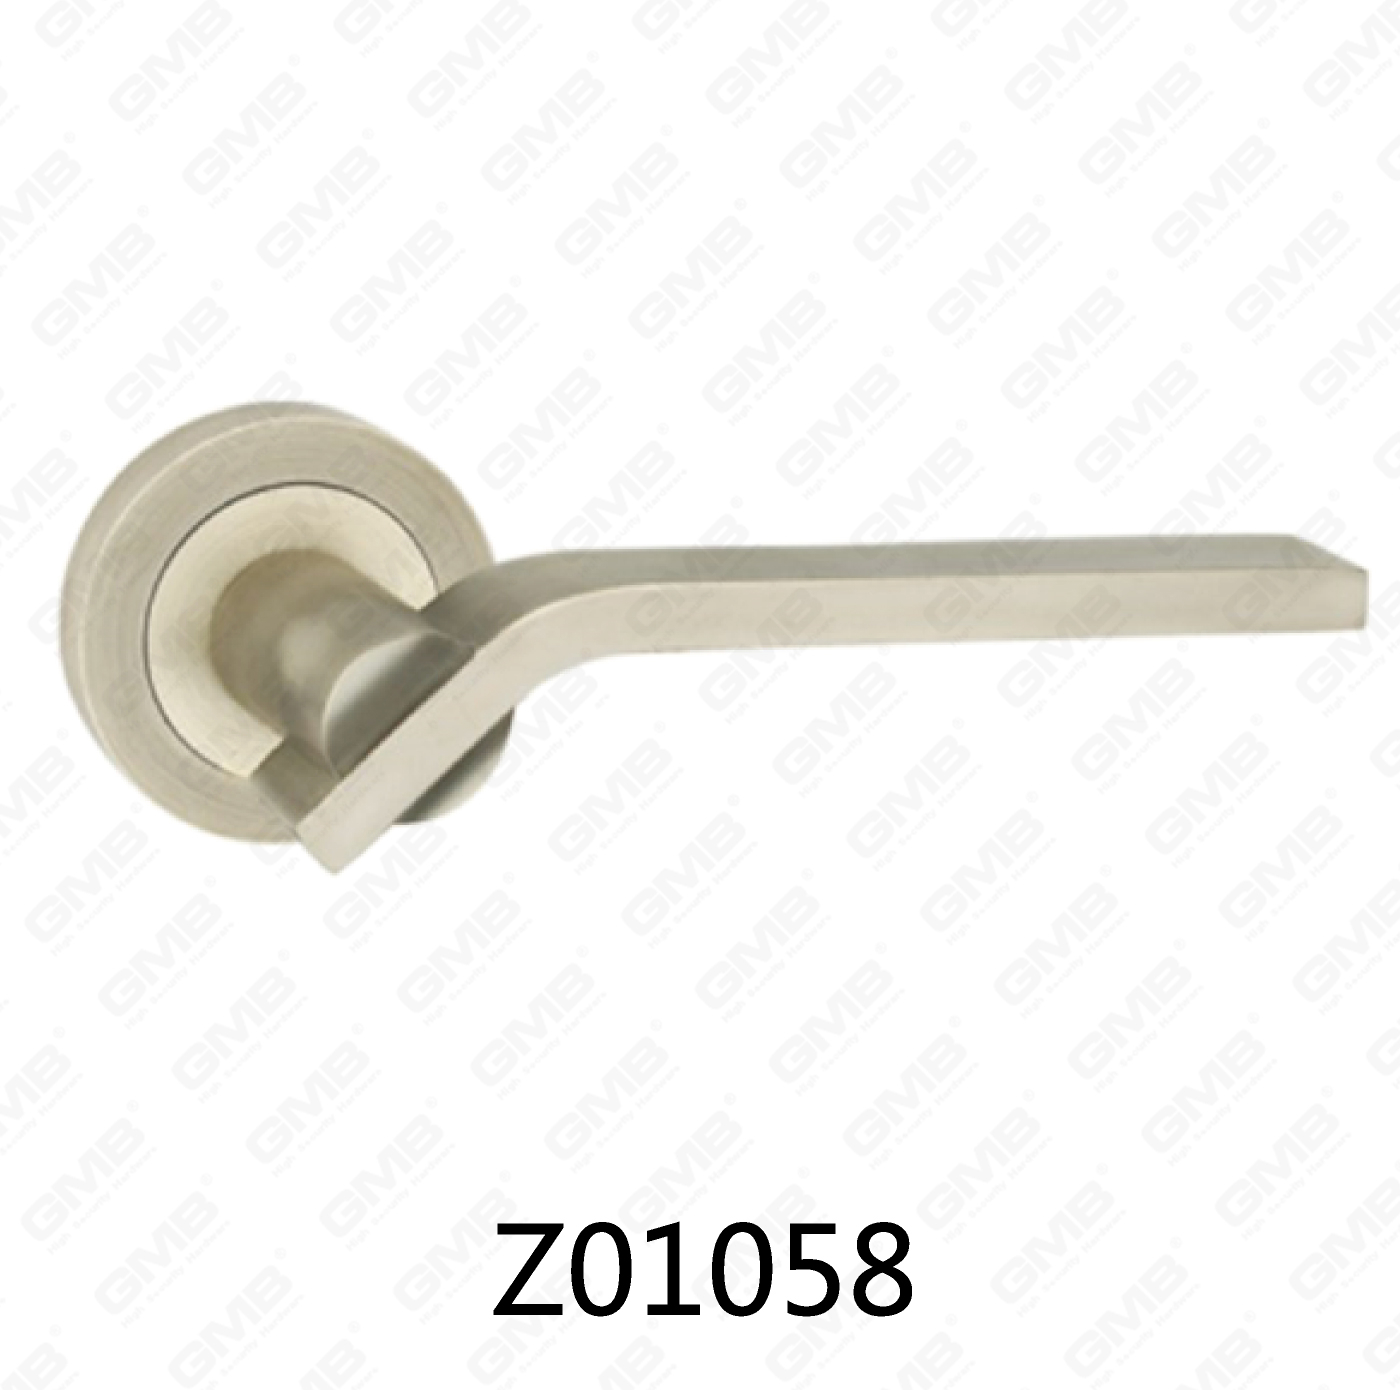 Asa de puerta de roseta de aluminio de aleación de zinc Zamak con roseta redonda (Z01058)